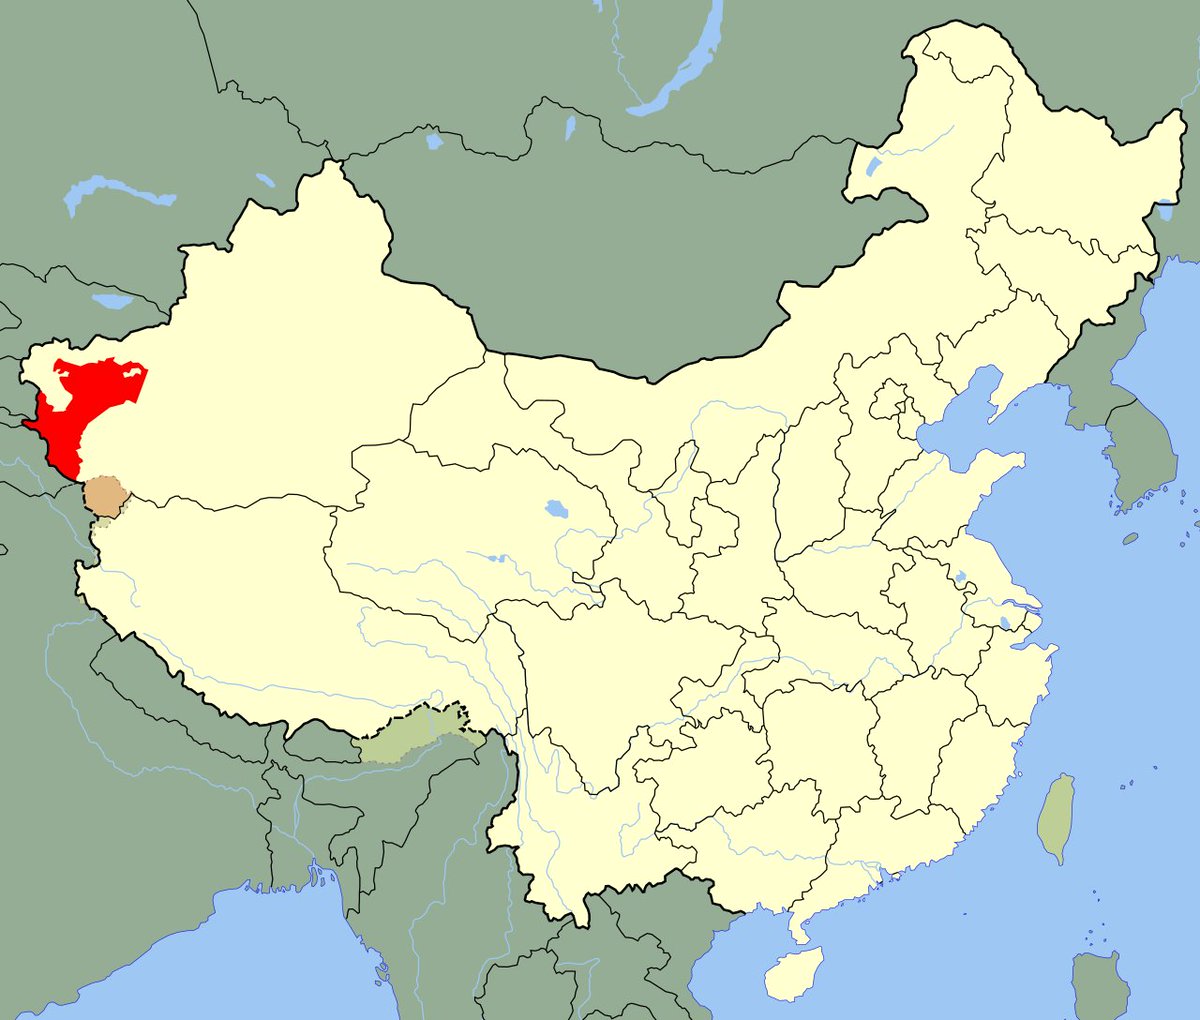 Le 22 juillet 1943, Osman Batur est proclamé Khan (Chef) de son peuple (Kazakh) dans la Première République du Turkestan Oriental composée de Ouïghours, Kazakhs et de Kirghizes.Il continue de combattre l'ennemi sans relâche.